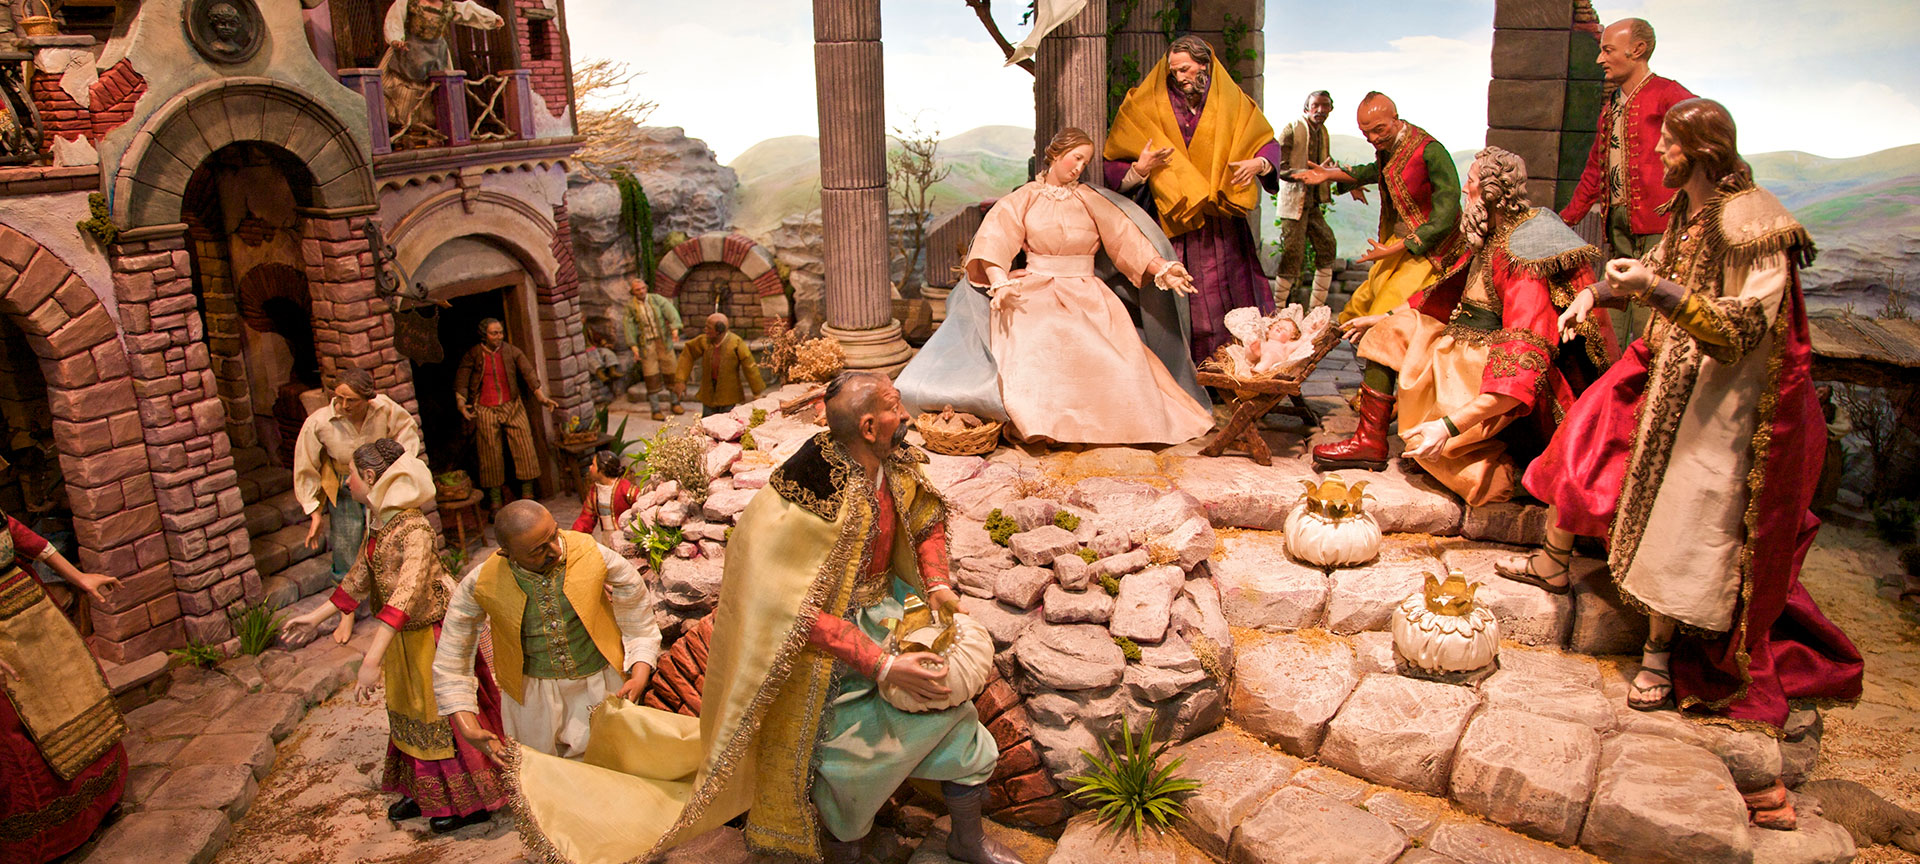 Nativity scene in Vitoria, The Basque Country